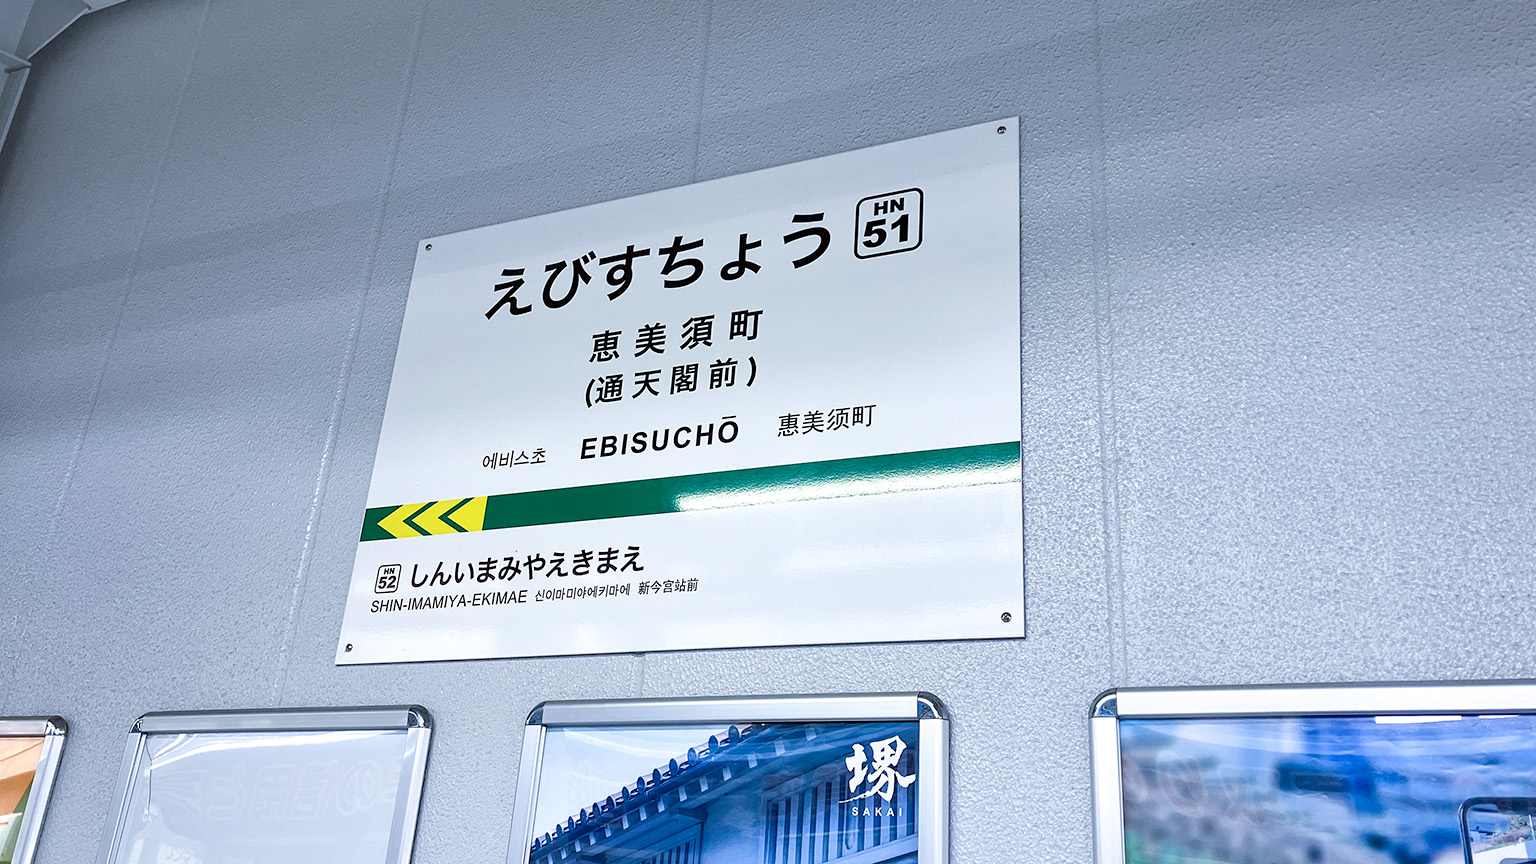 阪堺電気軌道阪堺線恵美須町停留所の駅名標の写真